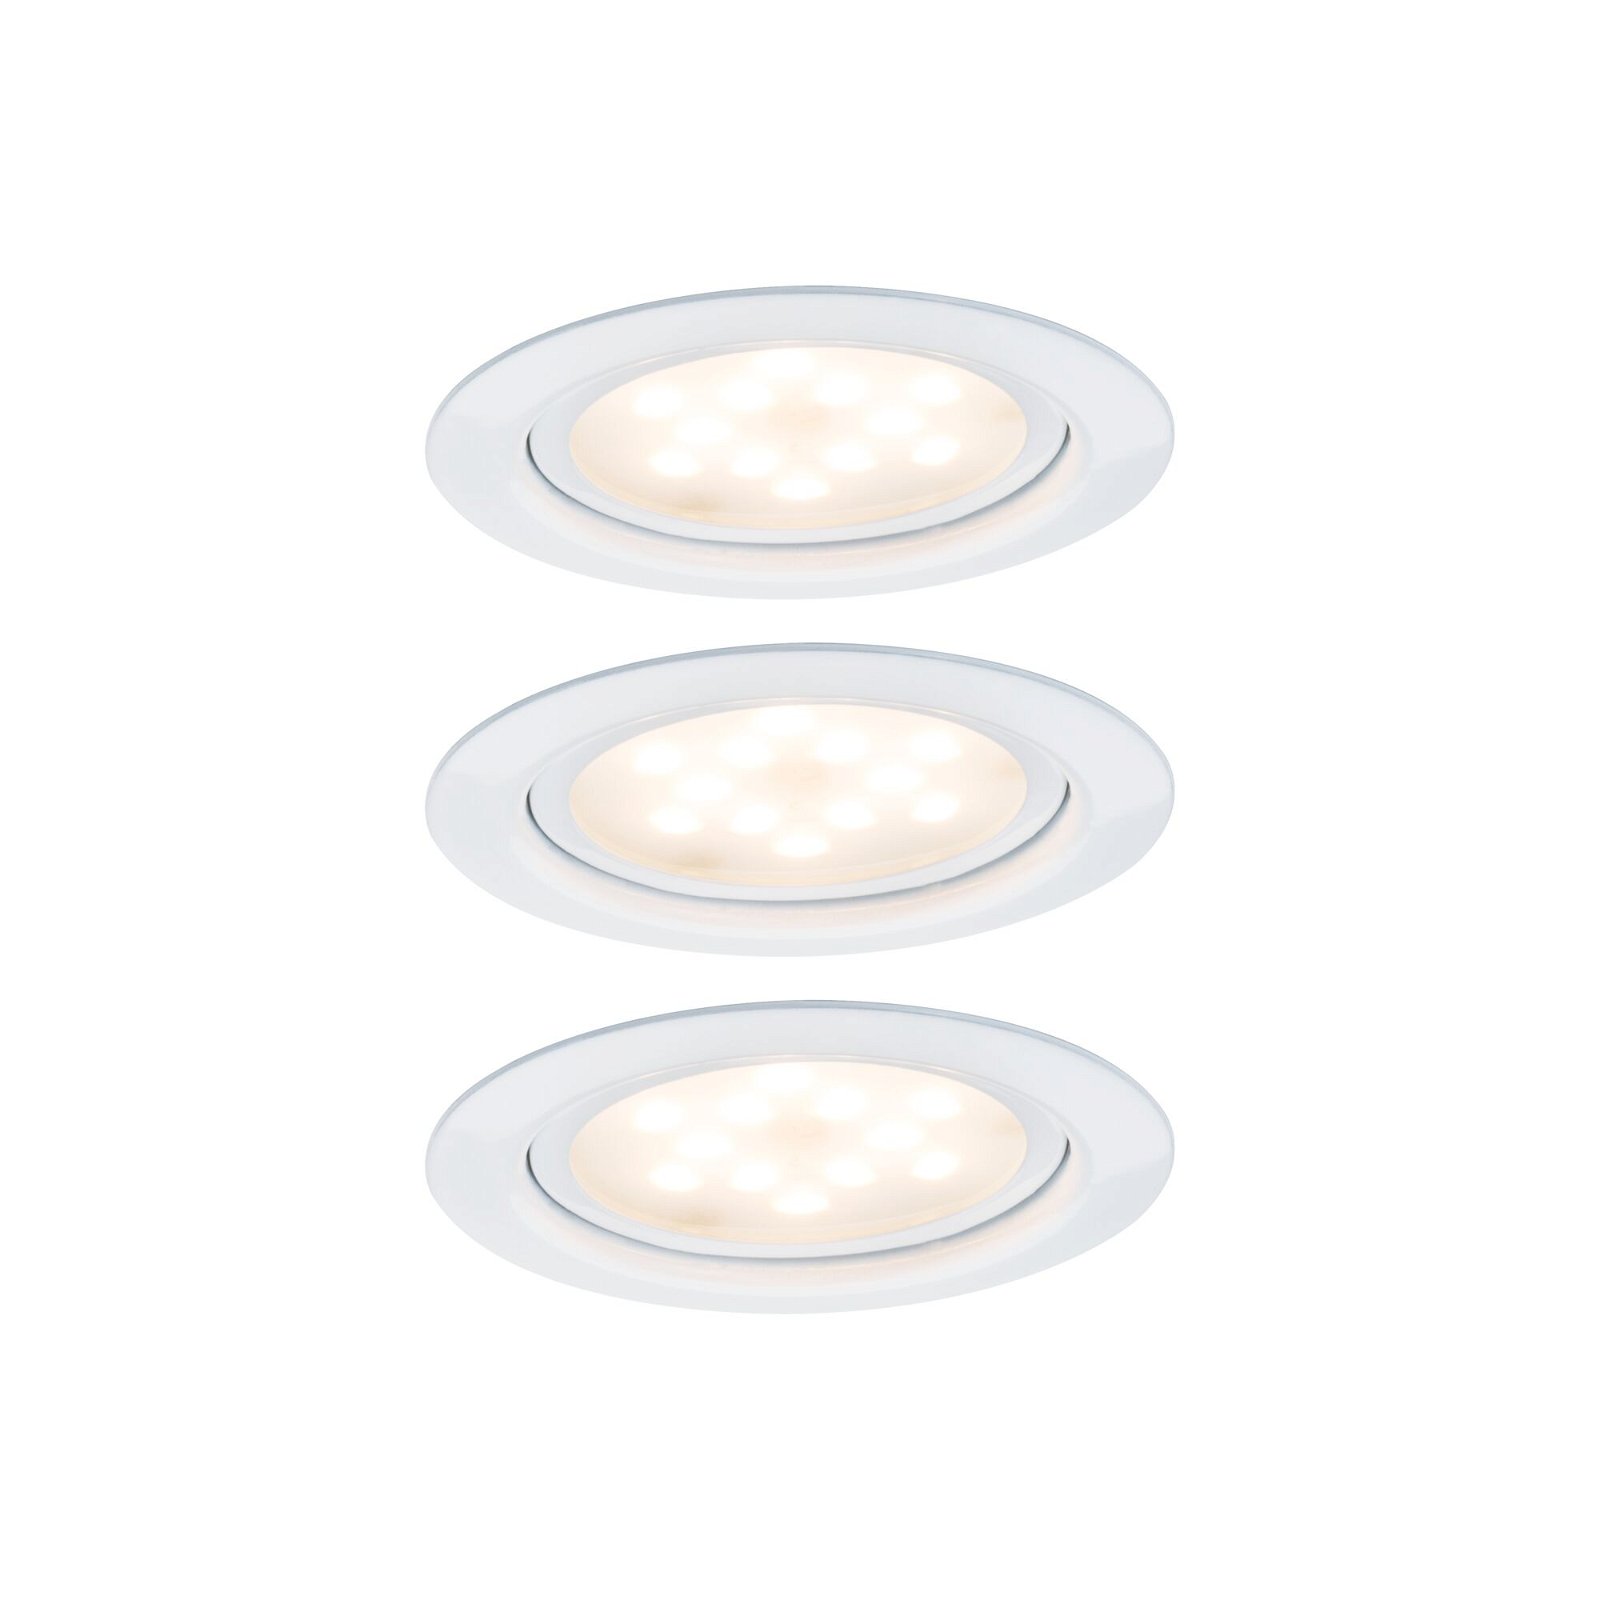 Éclairages encastrés LED pour meubles Micro Line Kit de 3 rond 65mm 3x4,5W 3x300lm 230V 2700K Blanc